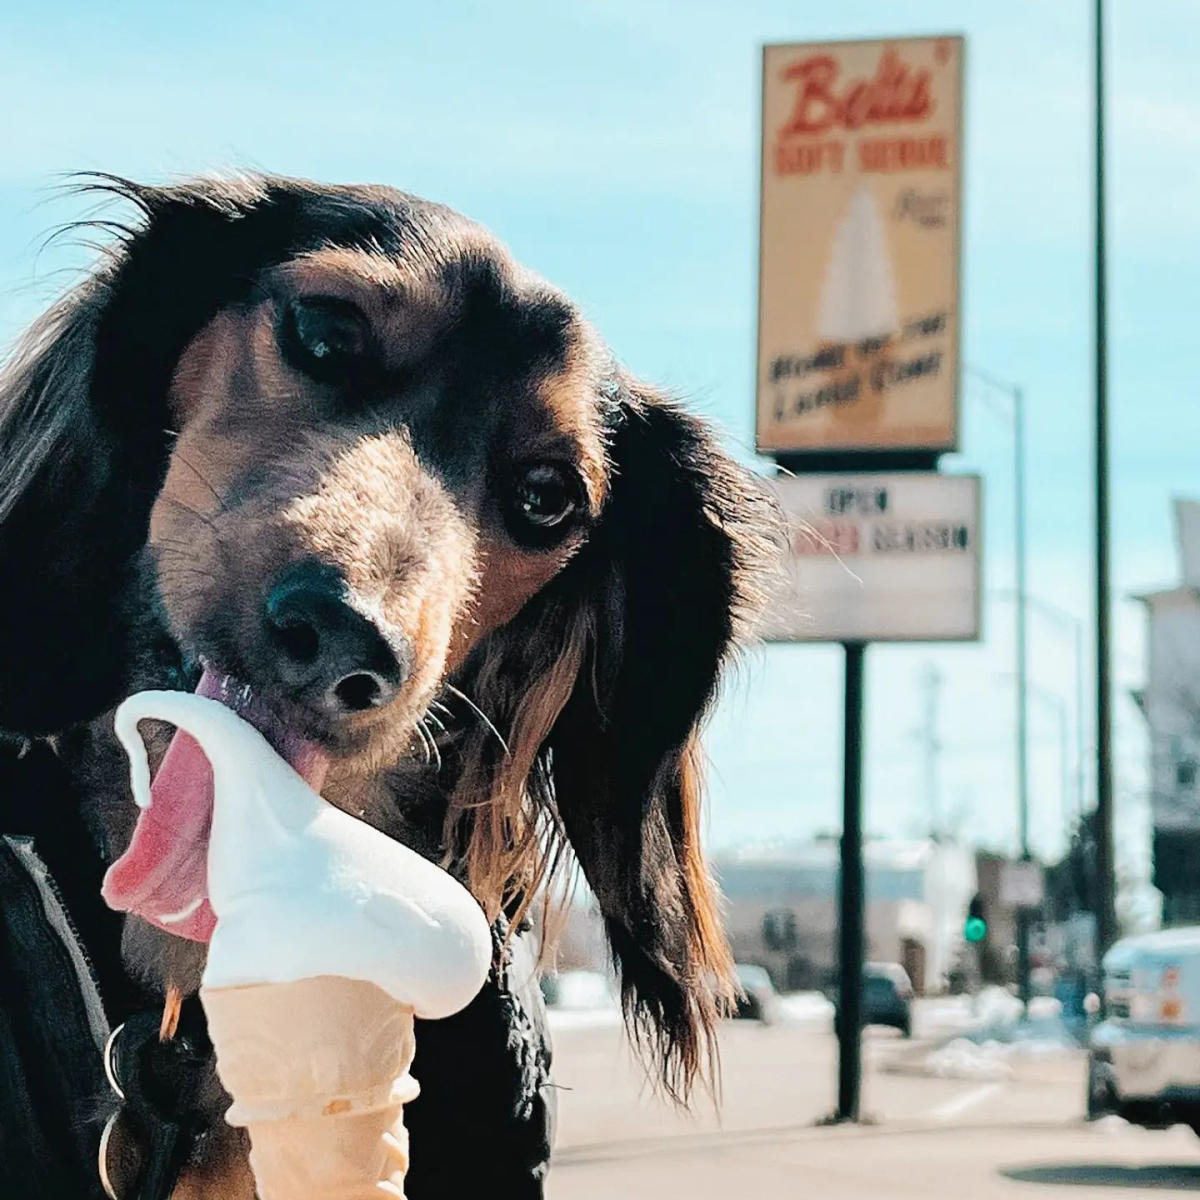 Dog eating Belts Ice Cream